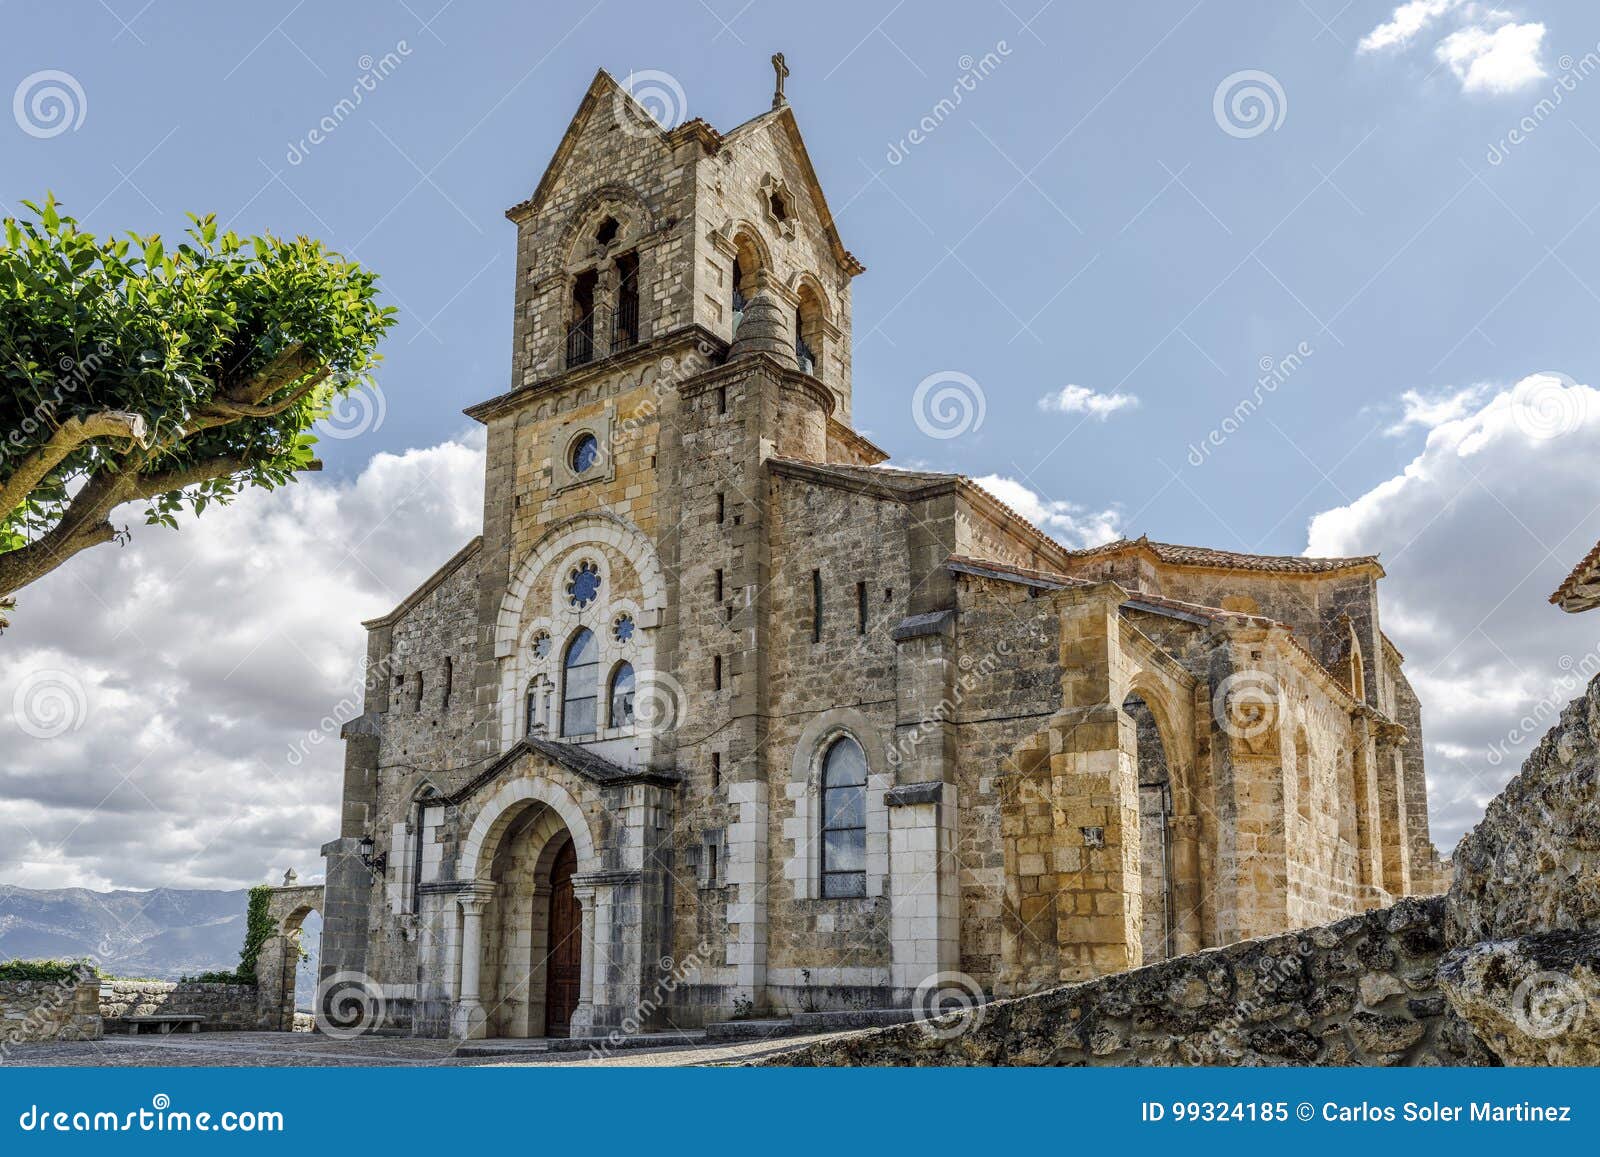 parochial church of san vicente martir and san sebastian, frias burgos